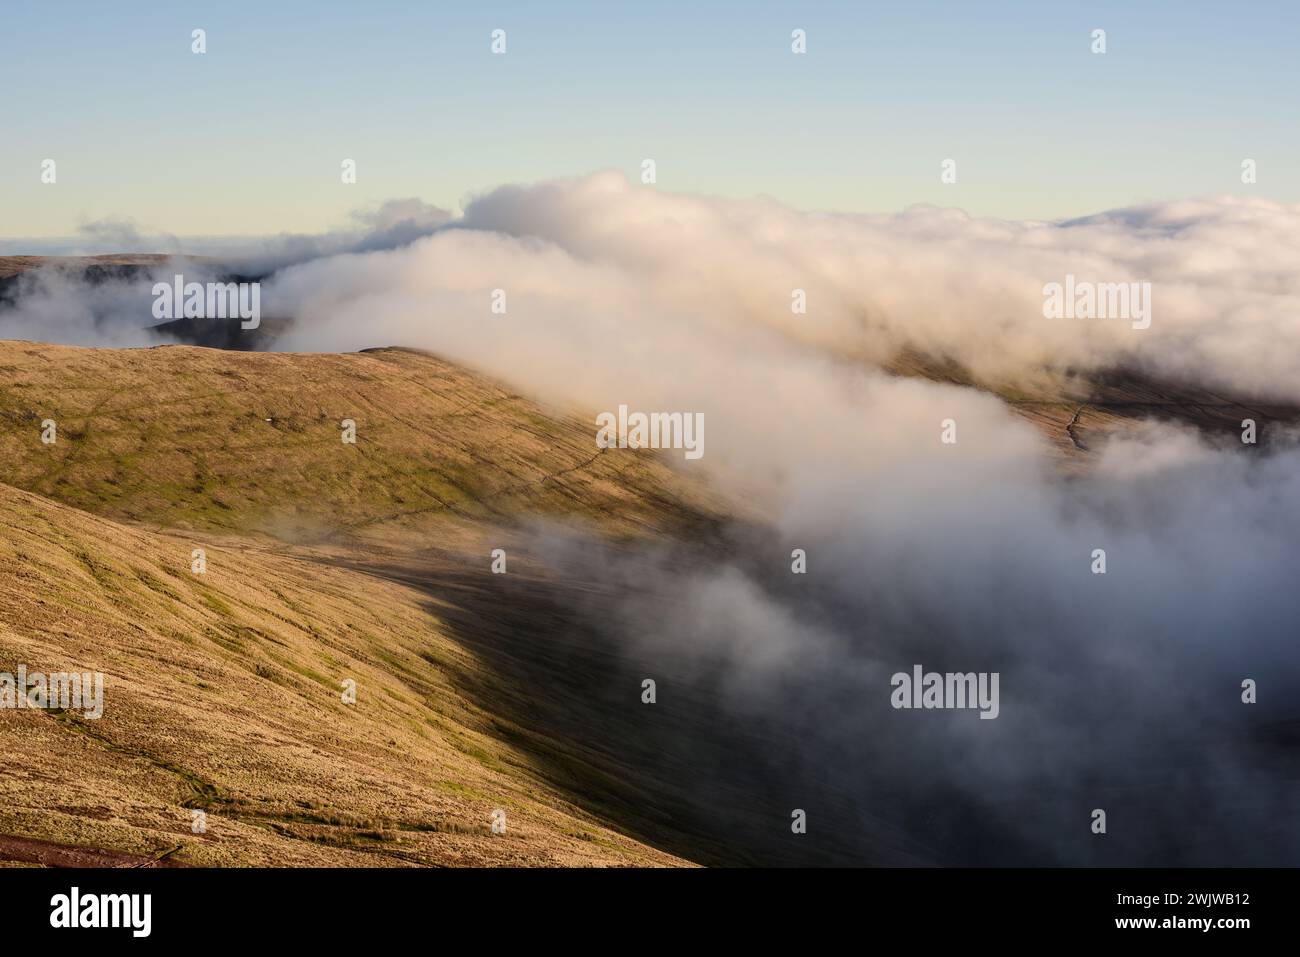 Vista dall'alto da Pen y fan, un punto più alto di Brecon Beacons, o Bannau Brycheiniog, Galles. Montagne coperte di nuvole. Foto Stock